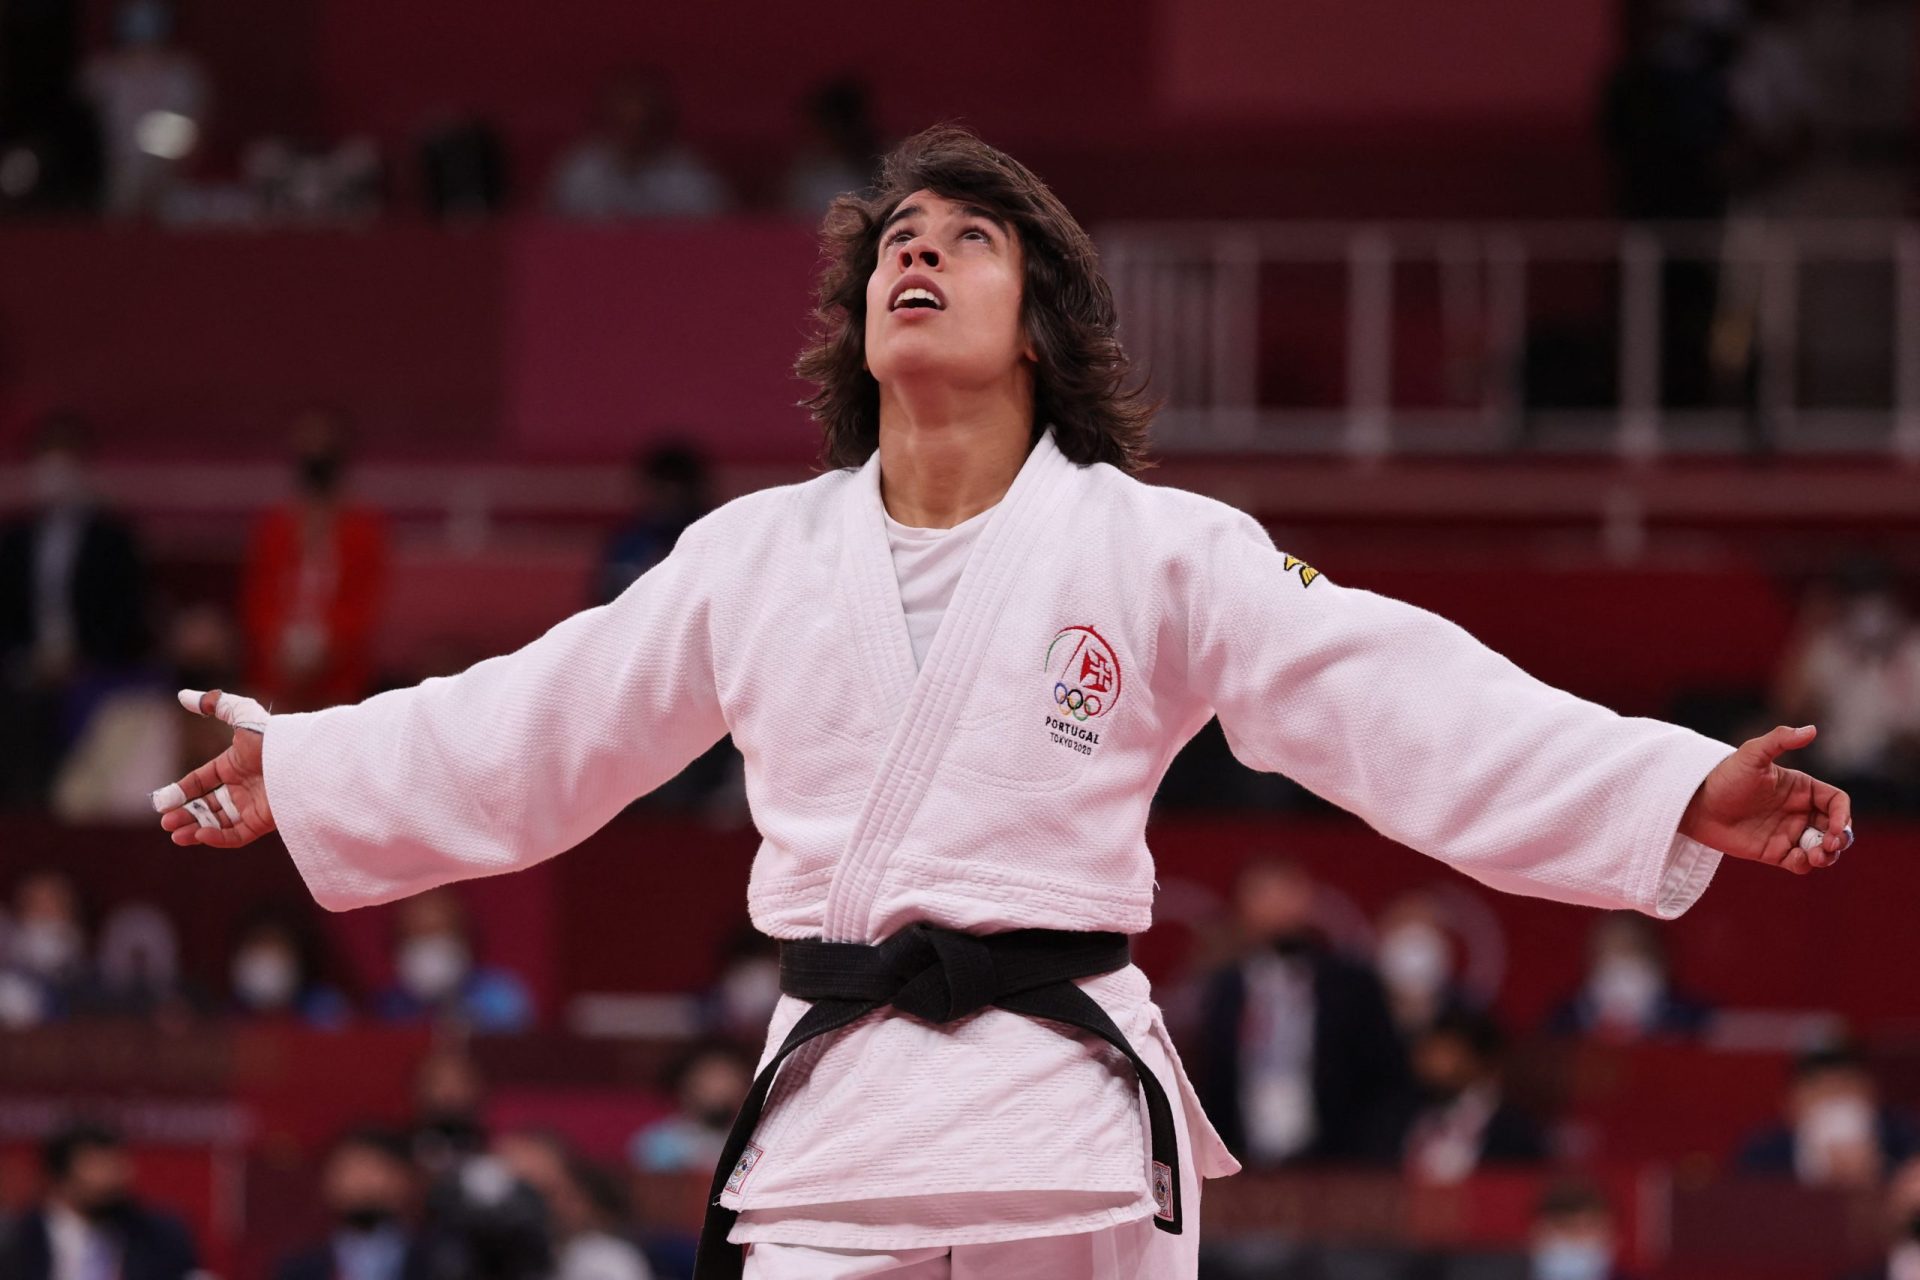 Judoca Catarina Costa voou alto na estreia nos Jogos Olímpicos ao conquistar quinto lugar na categoria -48kg